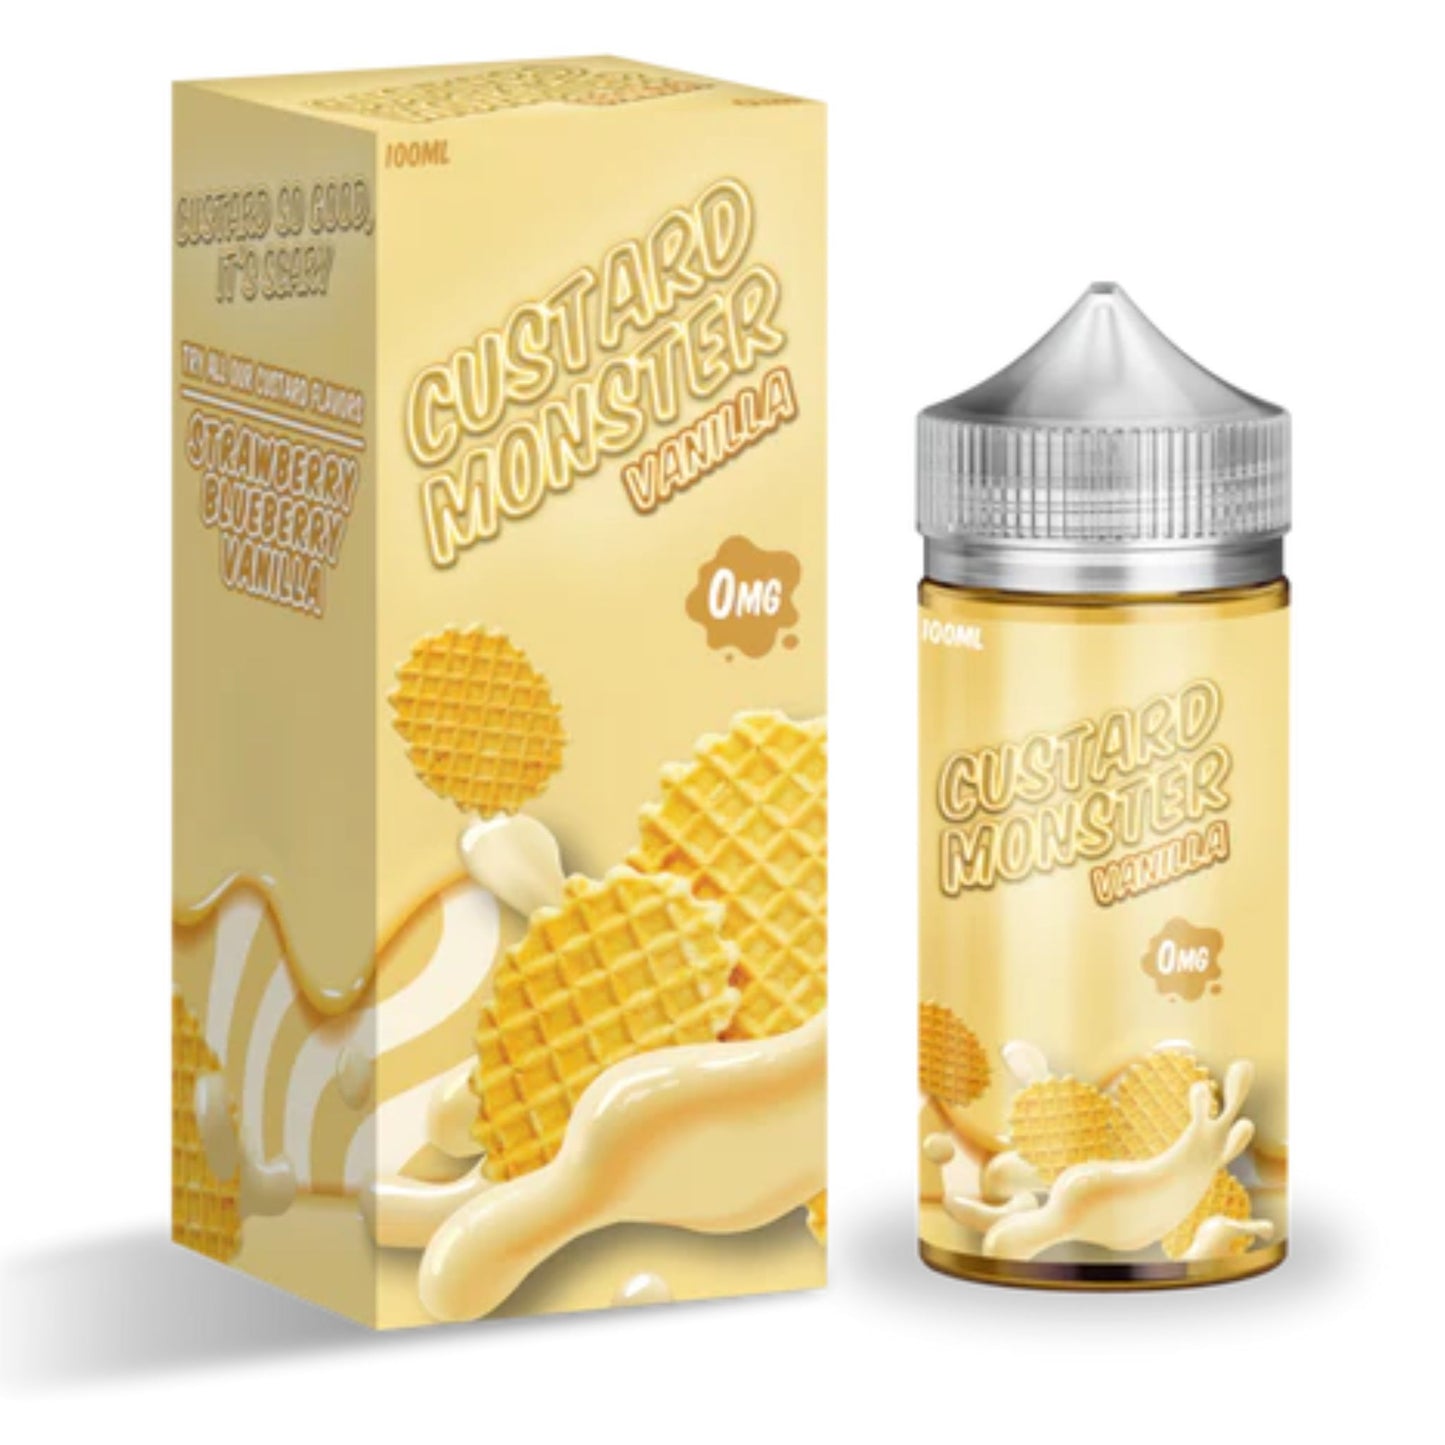 Custard Monster | Vanilla | 100ml bottle and box